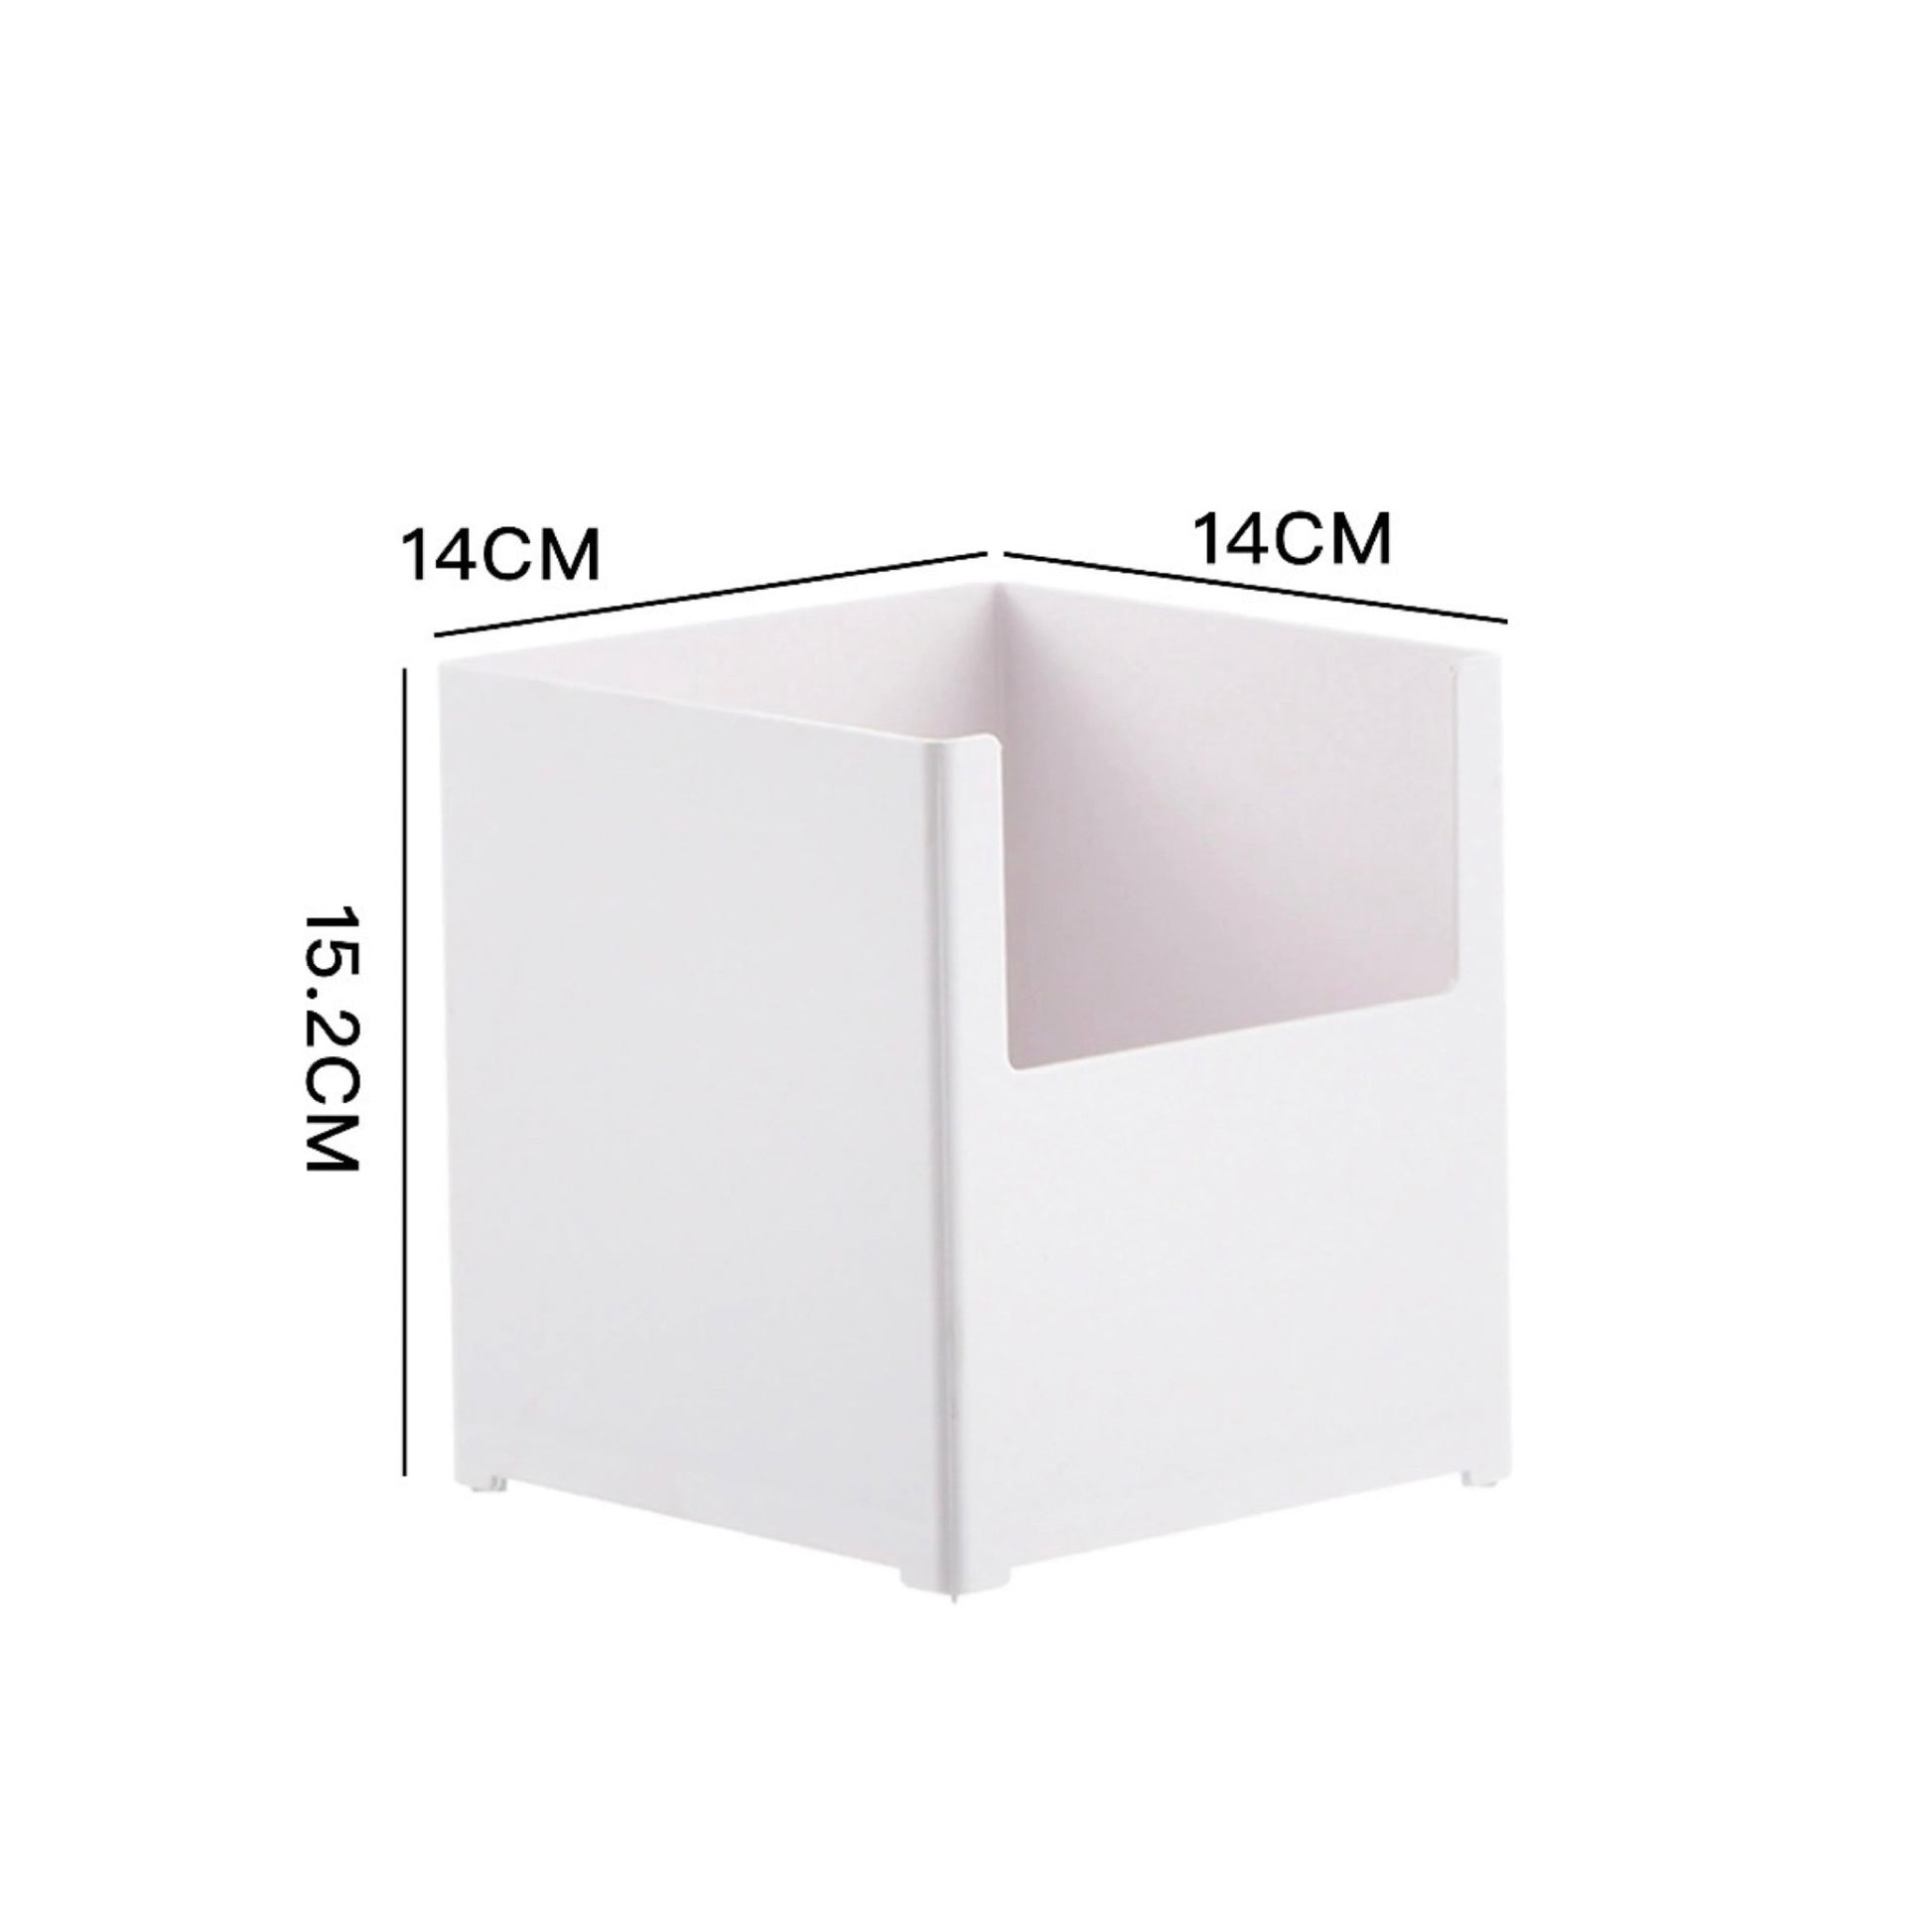 Quadratische, weiße Aufbewahrungsbox mit halb offener Vorderseite, Maße: 14 cm x 14 cm x 15,2 cm. Ihr Design ist minimalistisch und vielseitig, perfekt für das übersichtliche Sortieren von Objekten in jedem Raum.